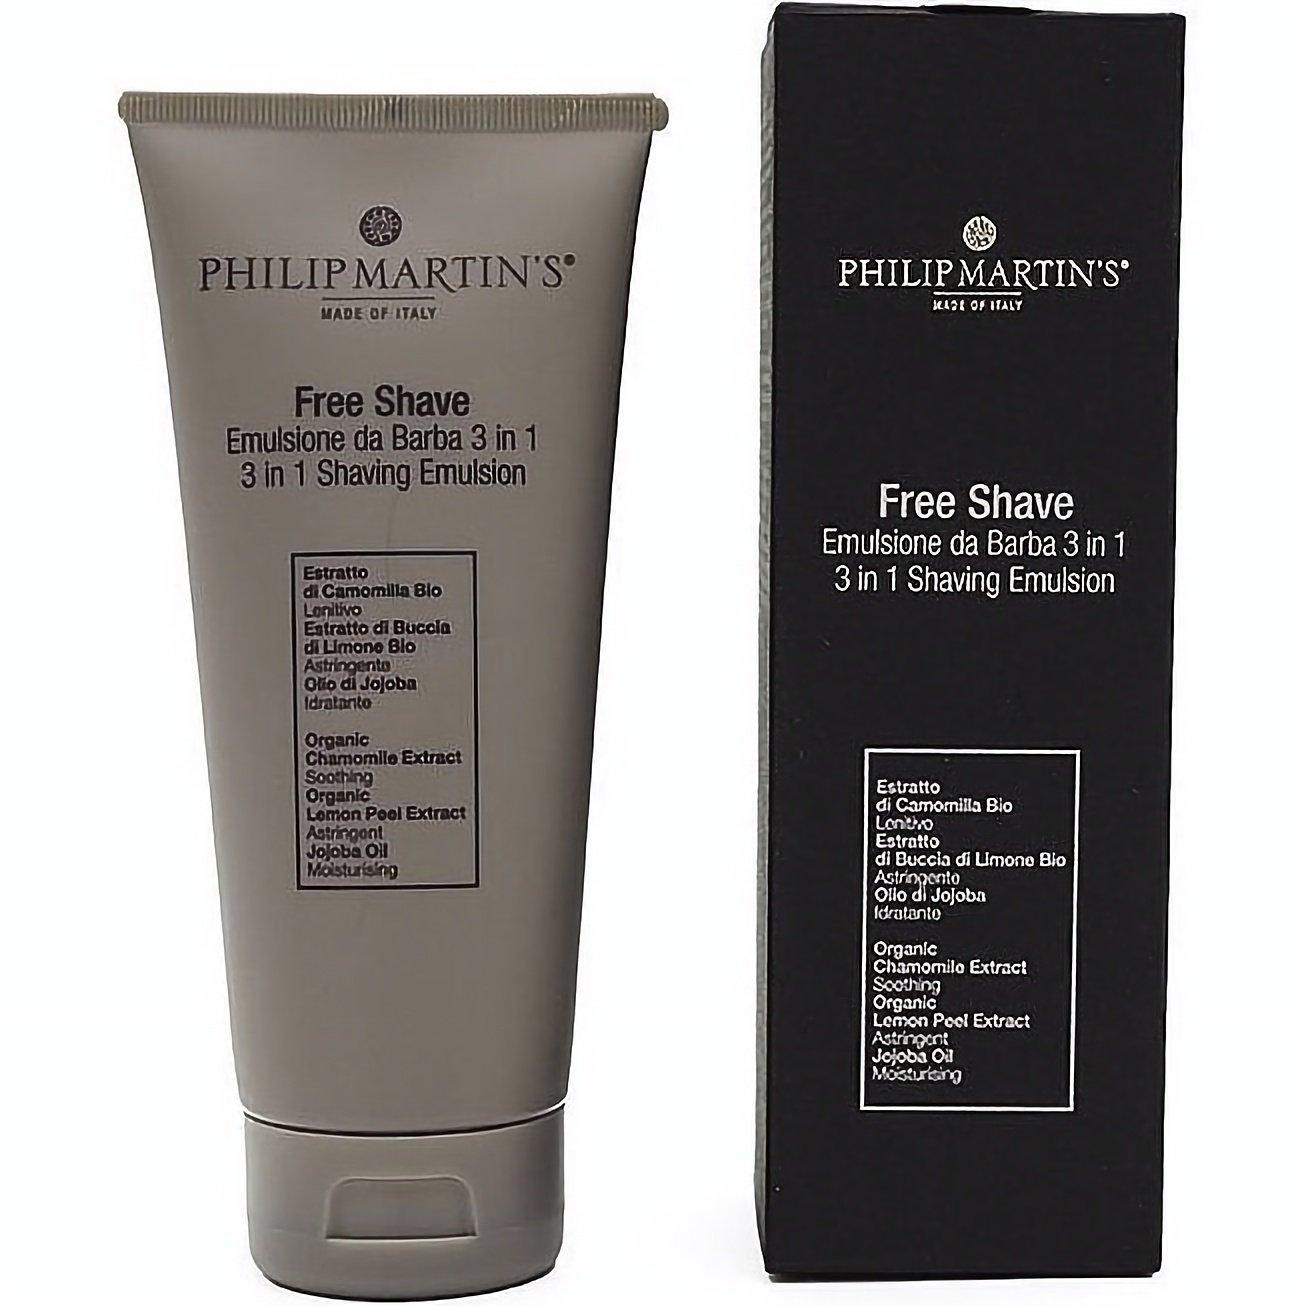 Емульсія до та після гоління Philip Martin's Free Shave 3 in 1, 200 мл - фото 1